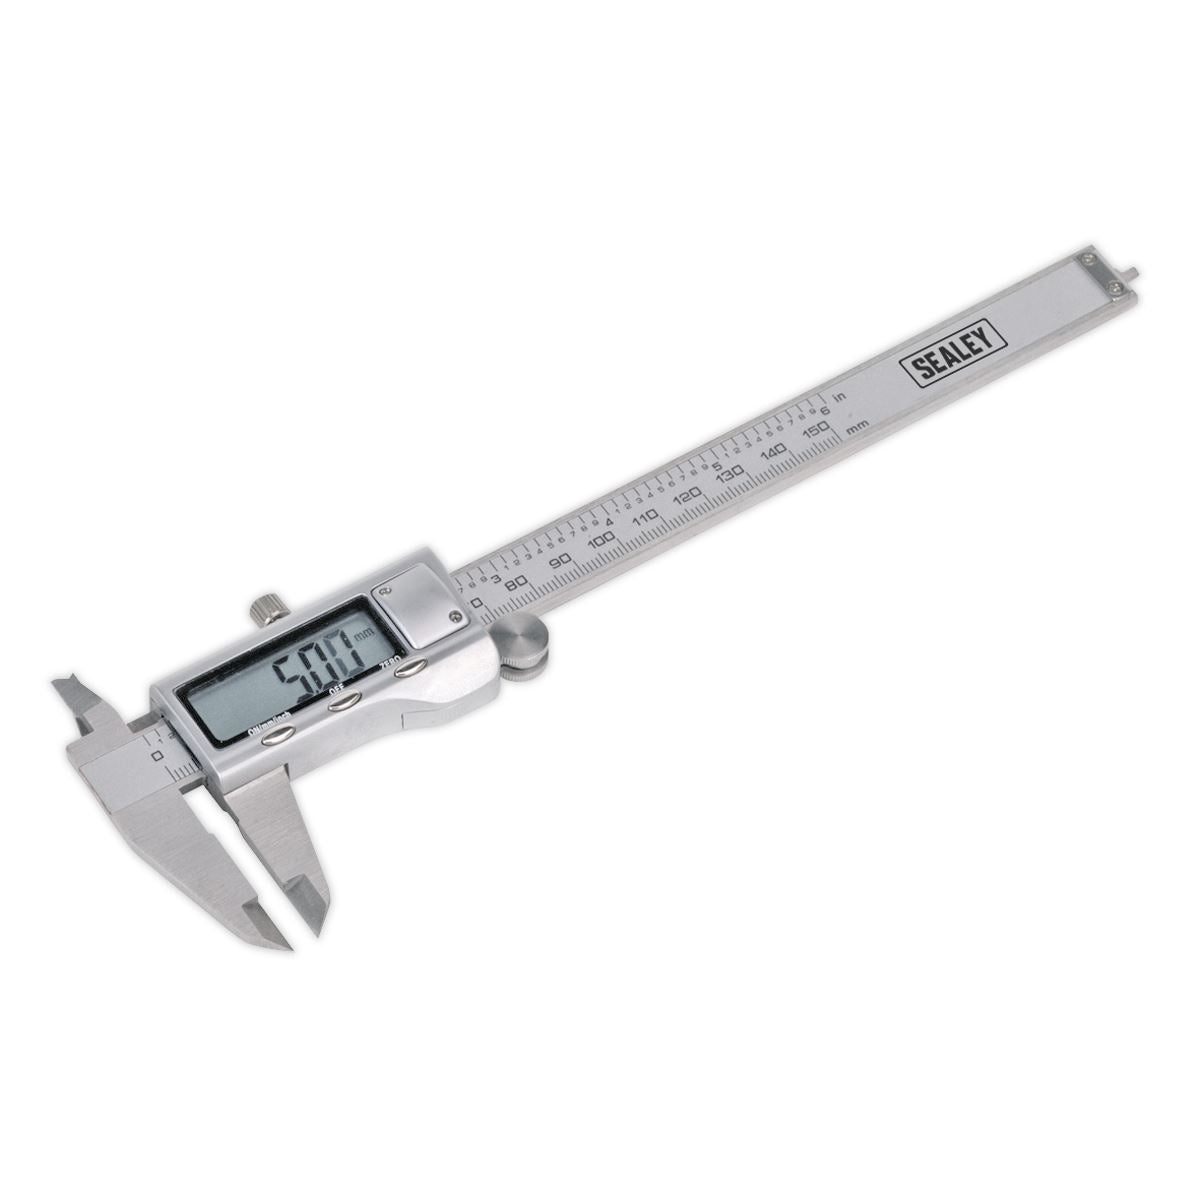 Sealey Premier 0-150mm Stainless Steel Digital Vernier Caliper Micrometer Gauge